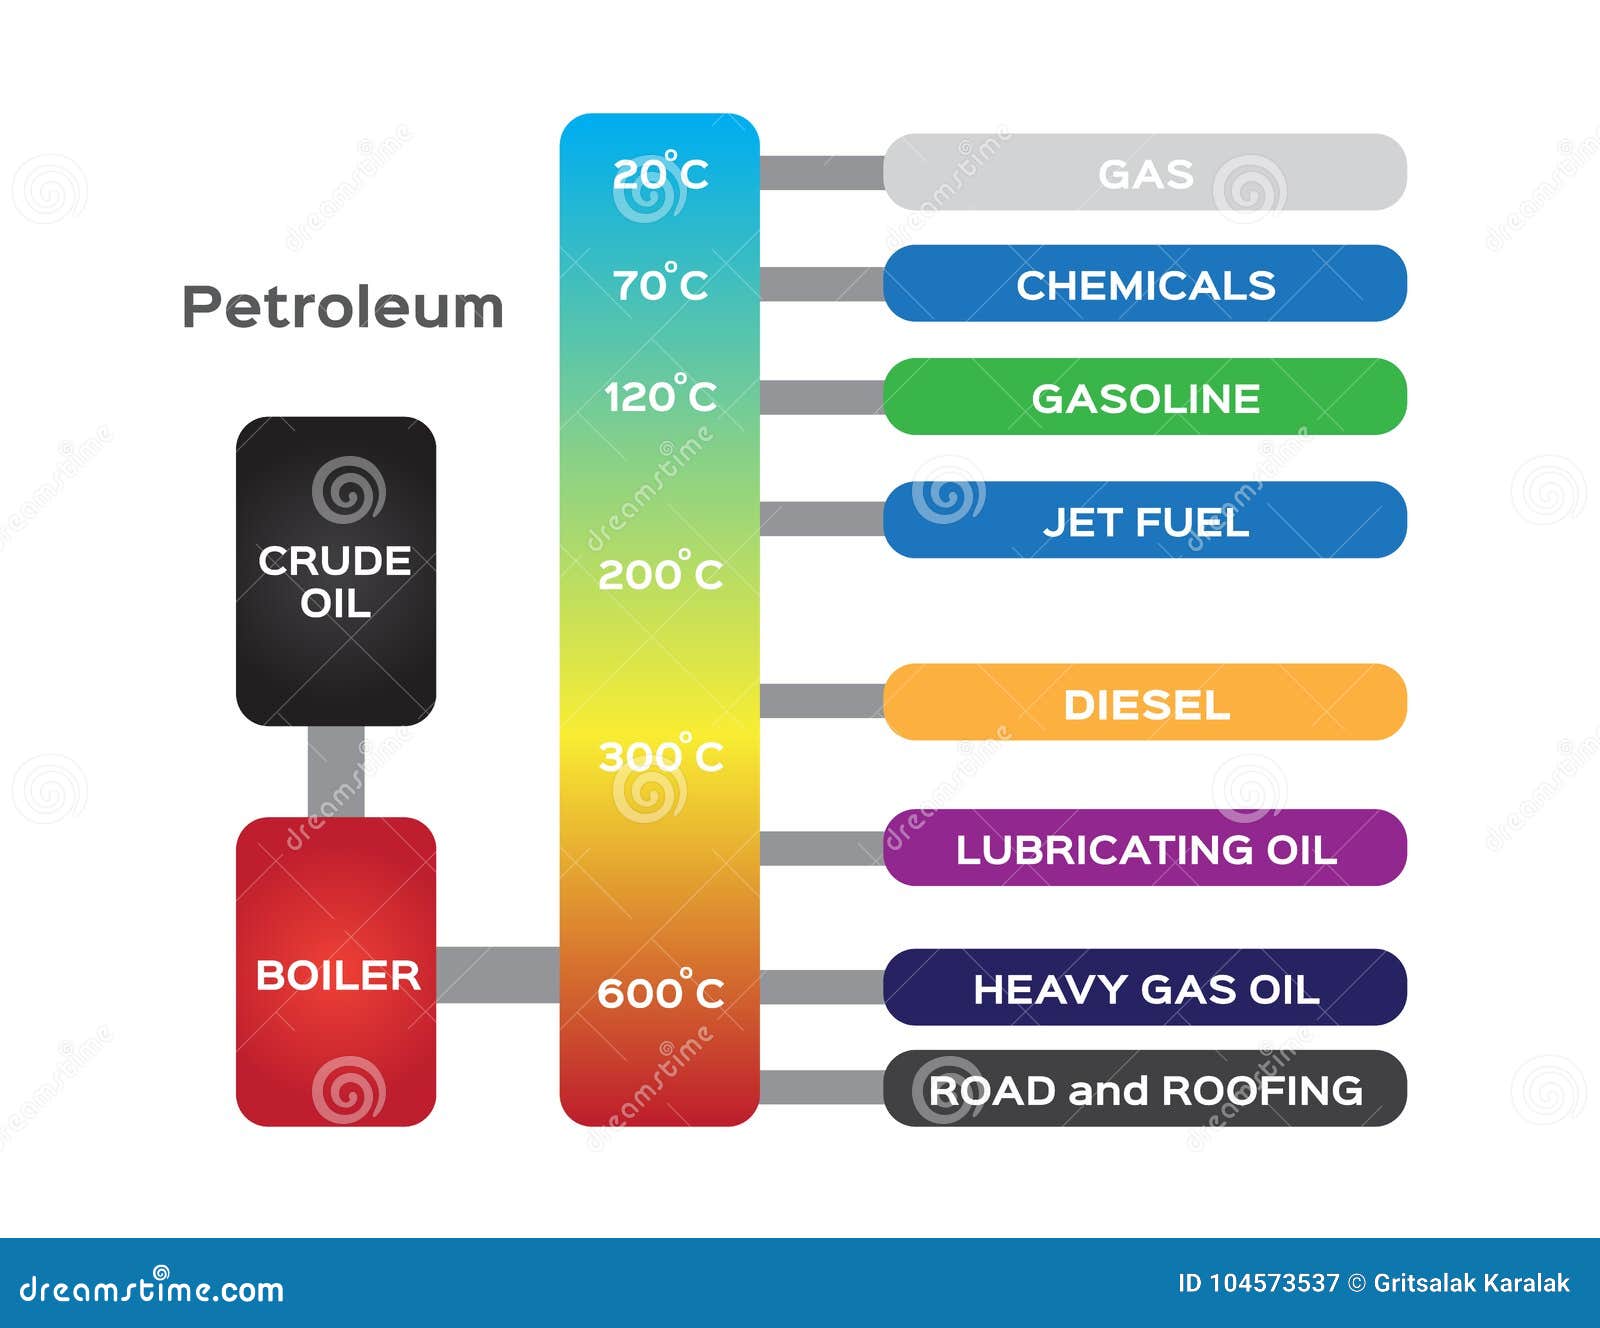 Oil Refinery Diagram